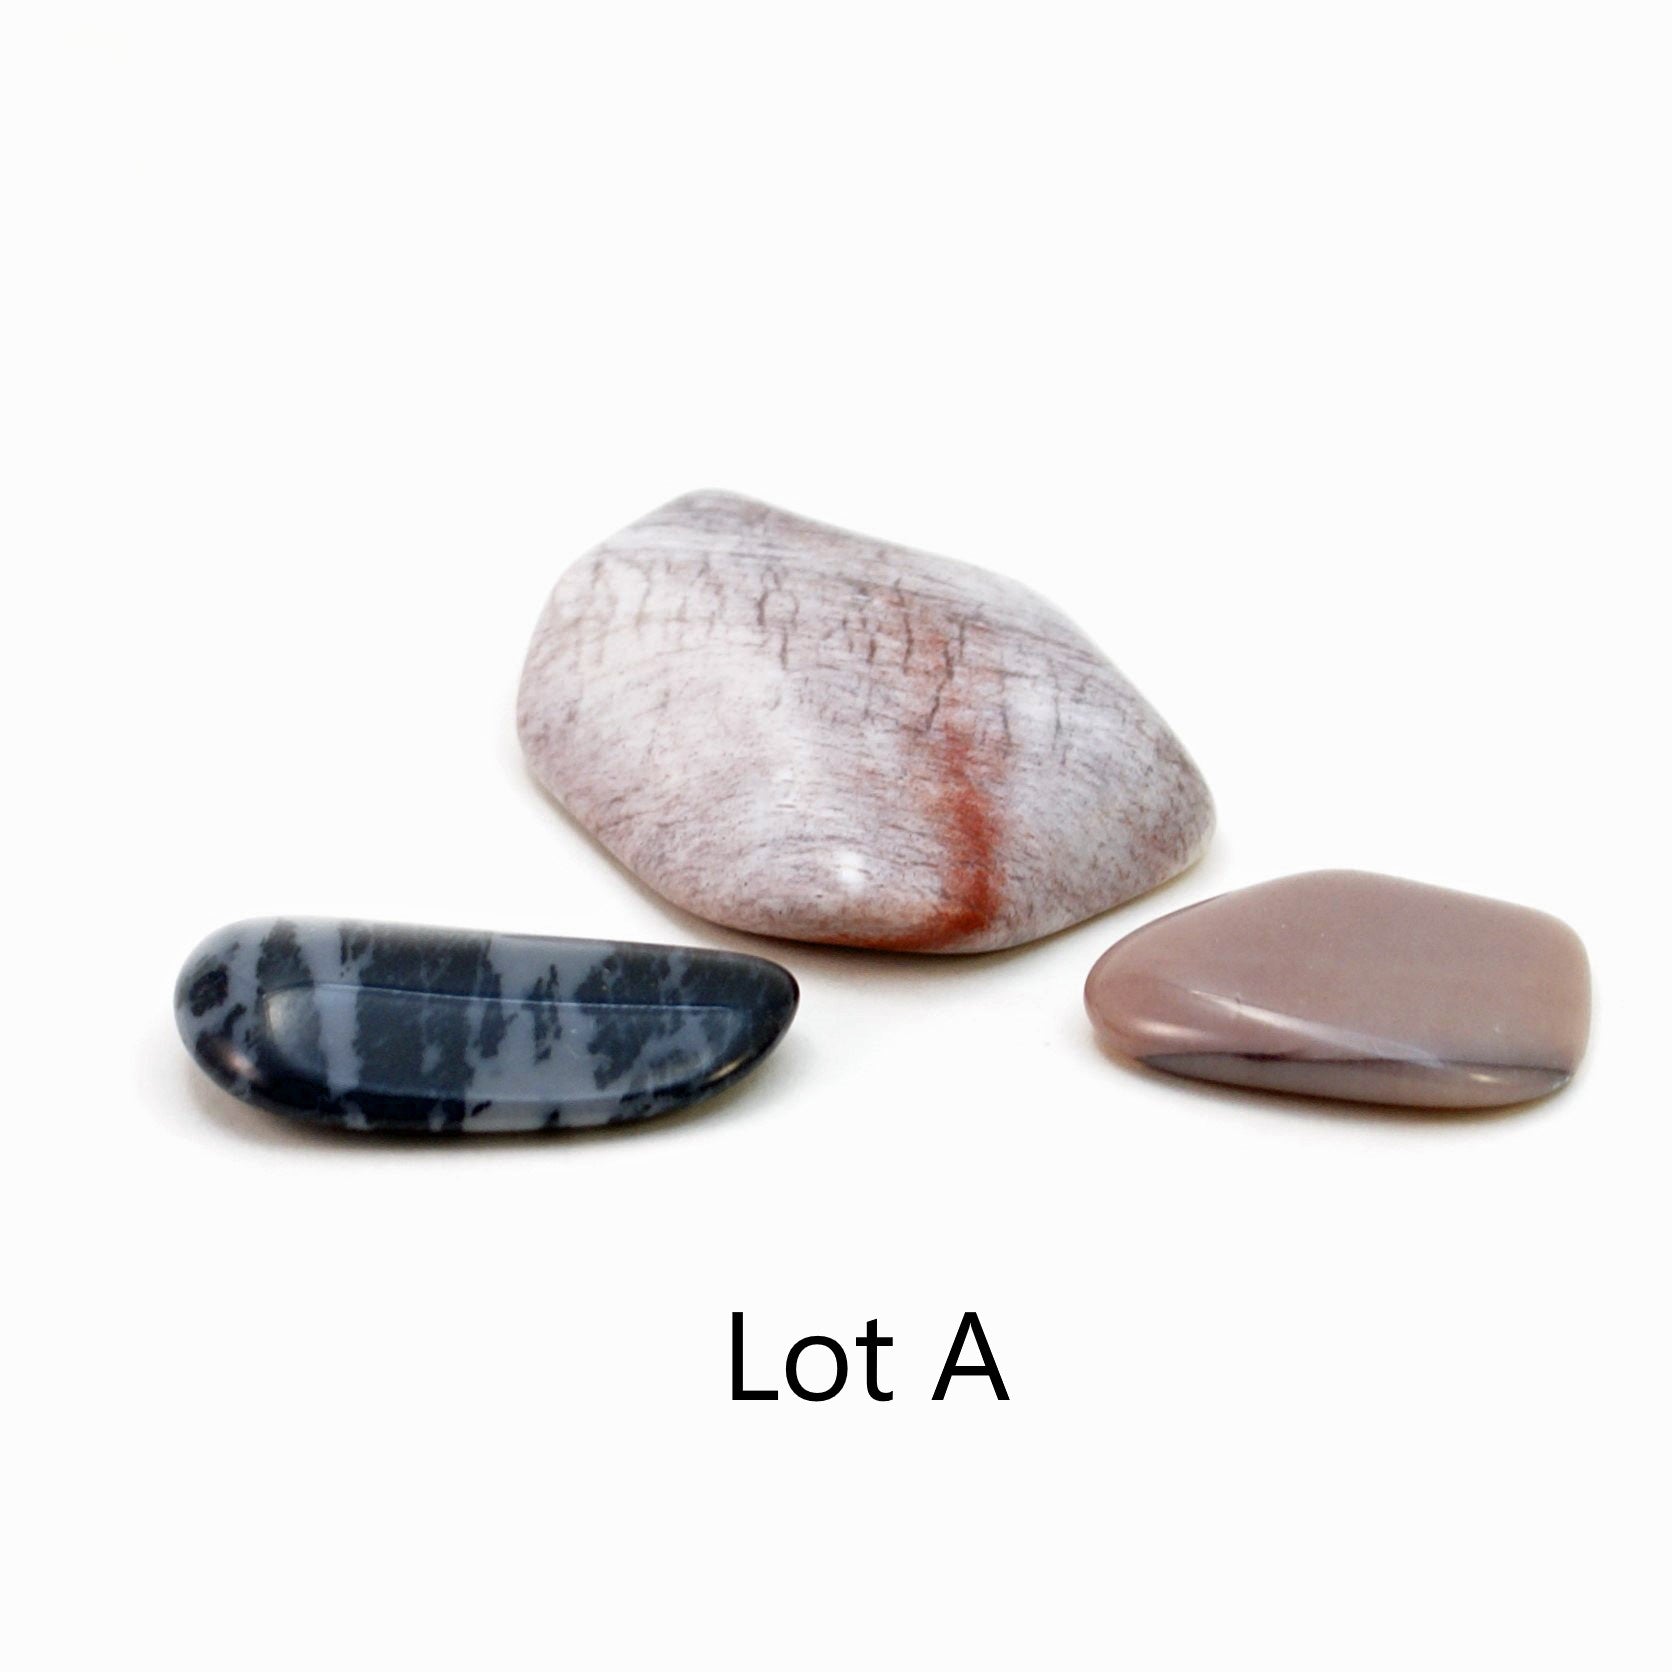 Lot A, 3 tumbled novaculite stones